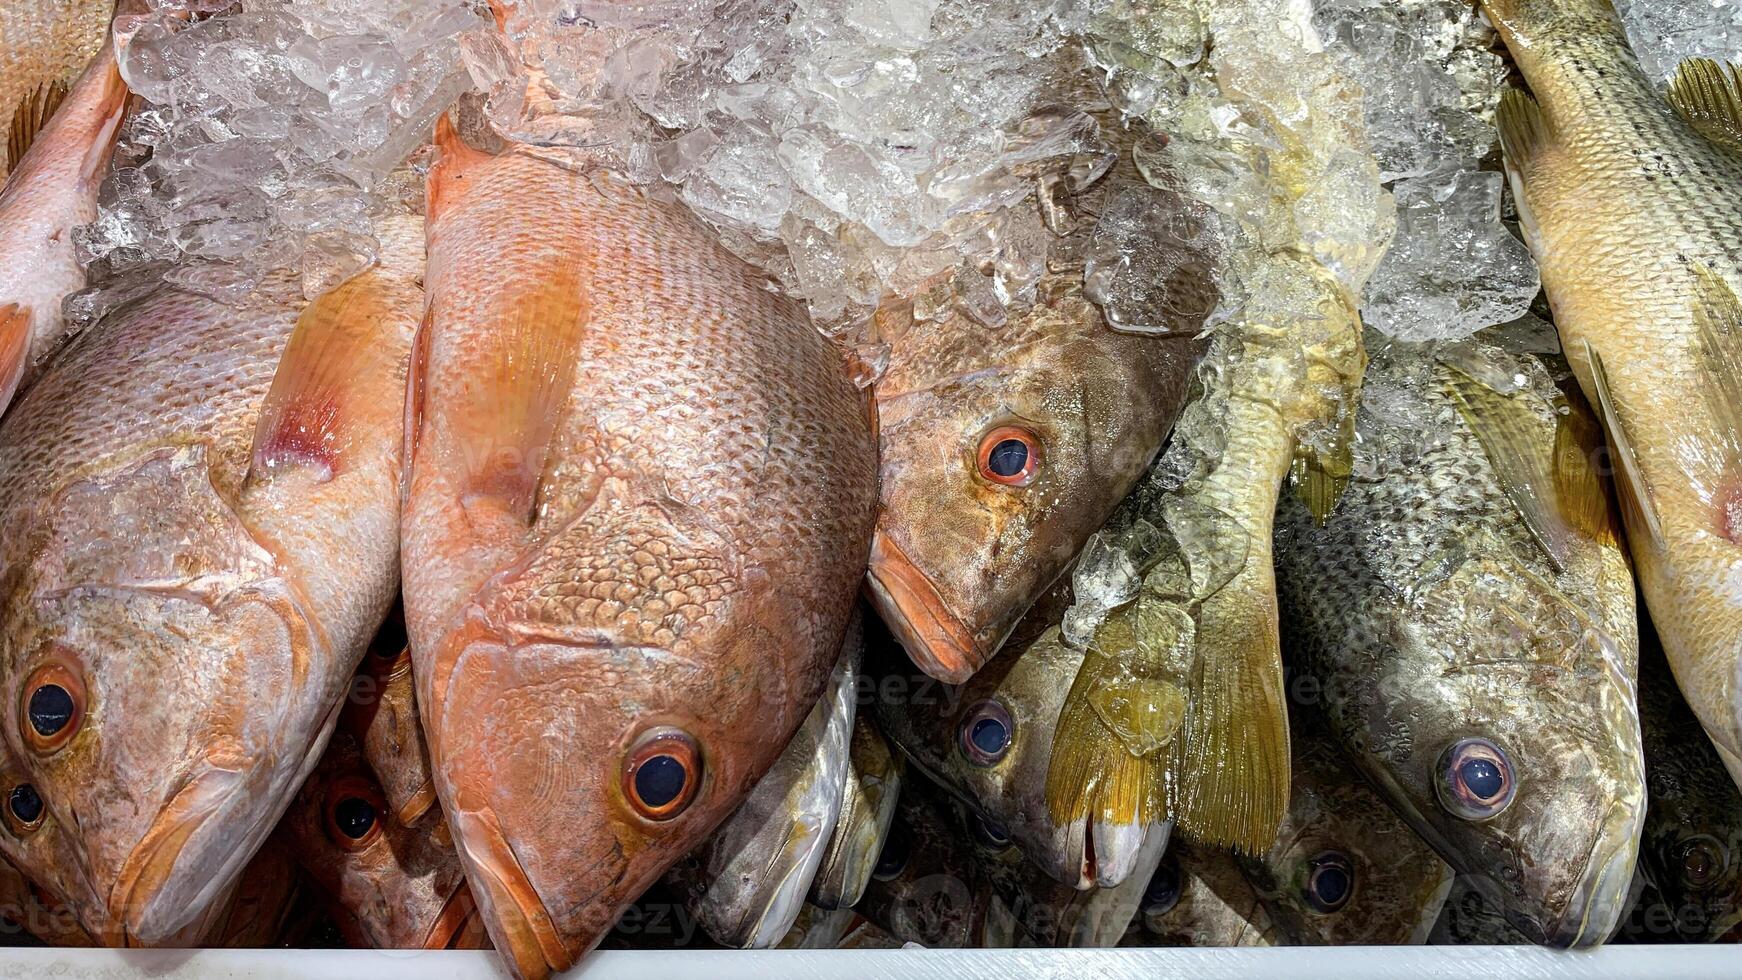 humide marché merveilles avec poisson sur afficher. humide marché concept photo